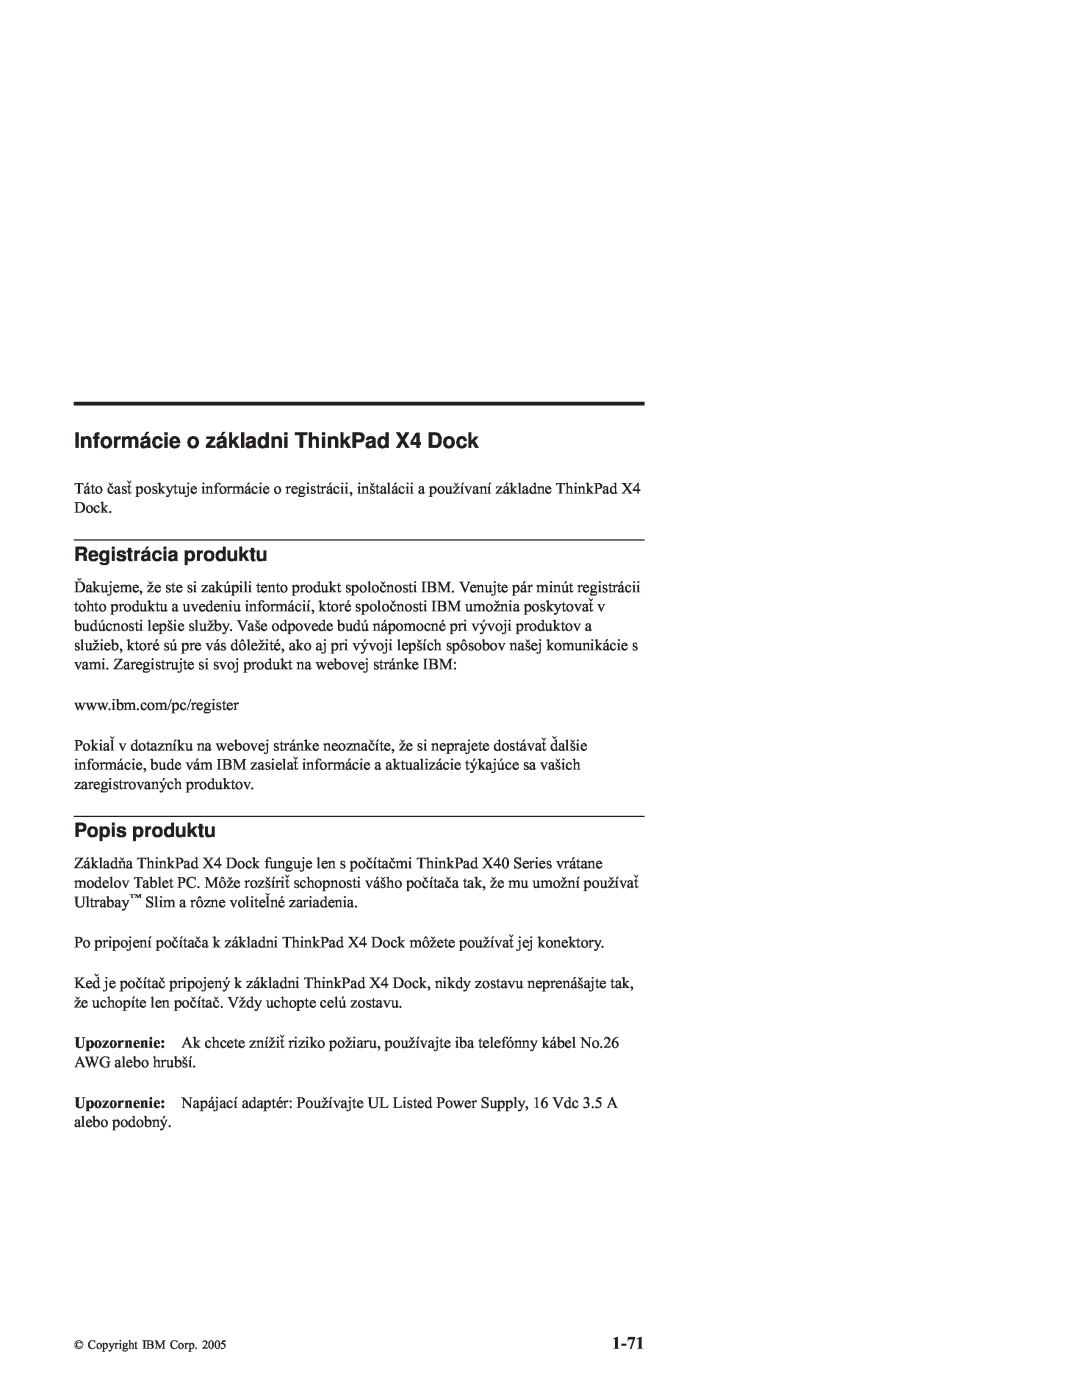 IBM manual Informácie o základni ThinkPad X4 Dock, Registrácia produktu, 1-71, Popis produktu 